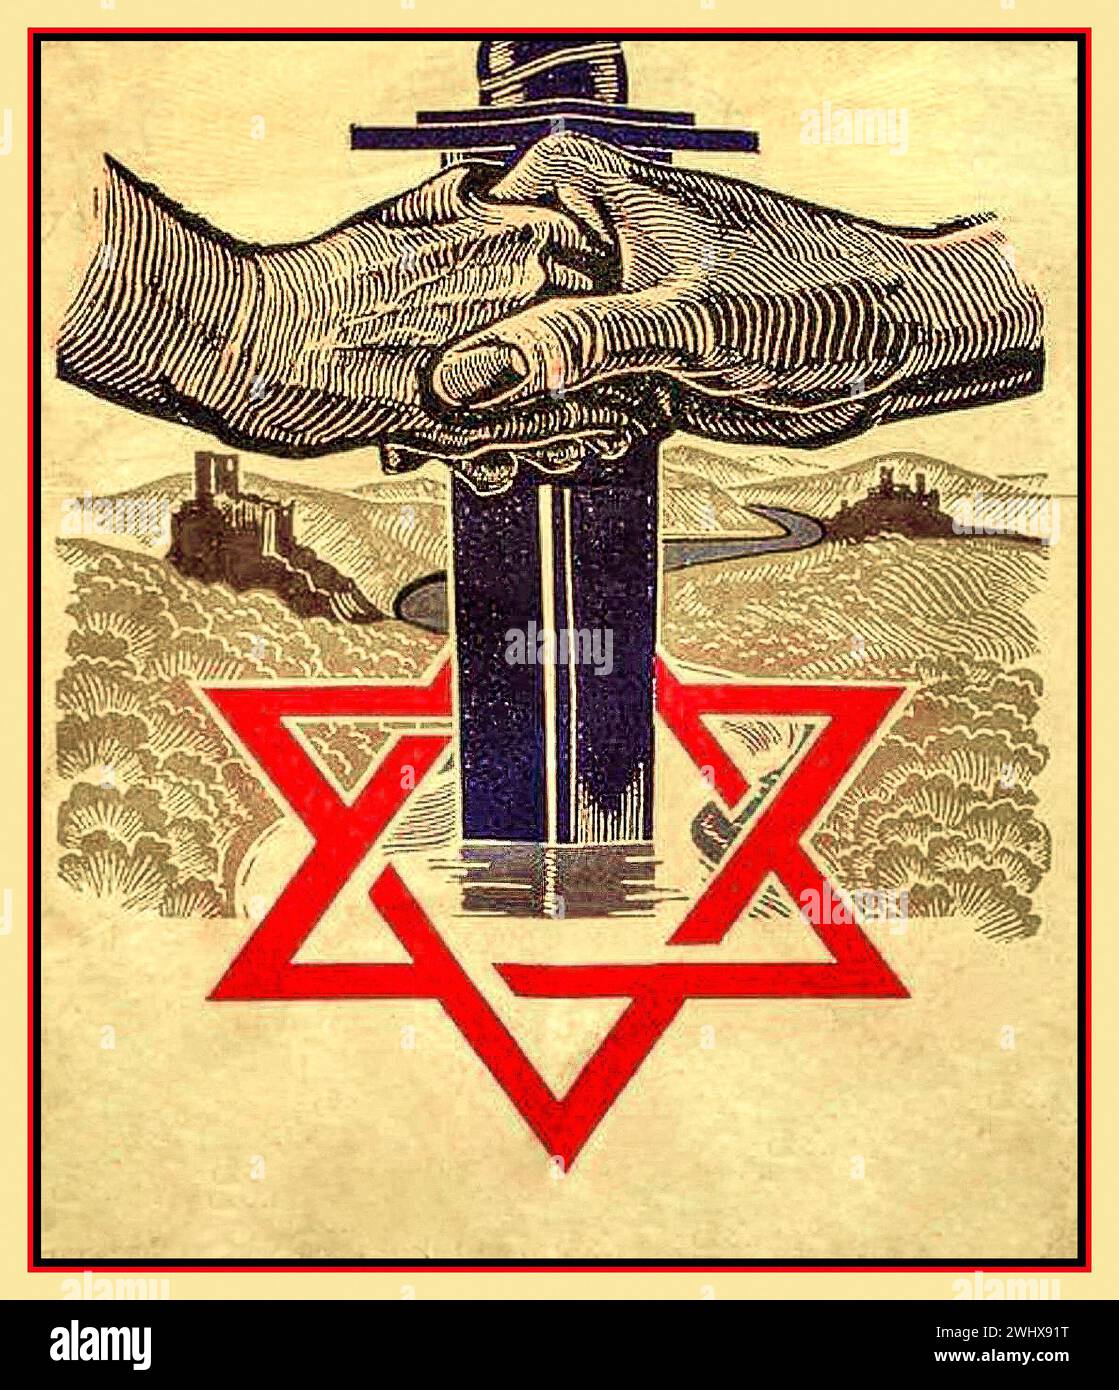 L'épée nazie Waffen SS des années 1940 de la seconde Guerre mondiale est conduite à travers l'emblème de l'étoile juive de David. Affiche de propagande par Allemagne nazie Waffen SS Allemagne nazie Banque D'Images